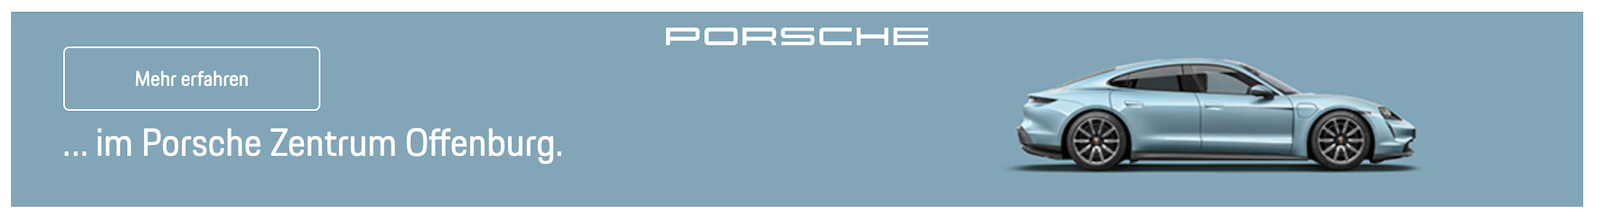 Banner Porsche Zentrum Offenburg